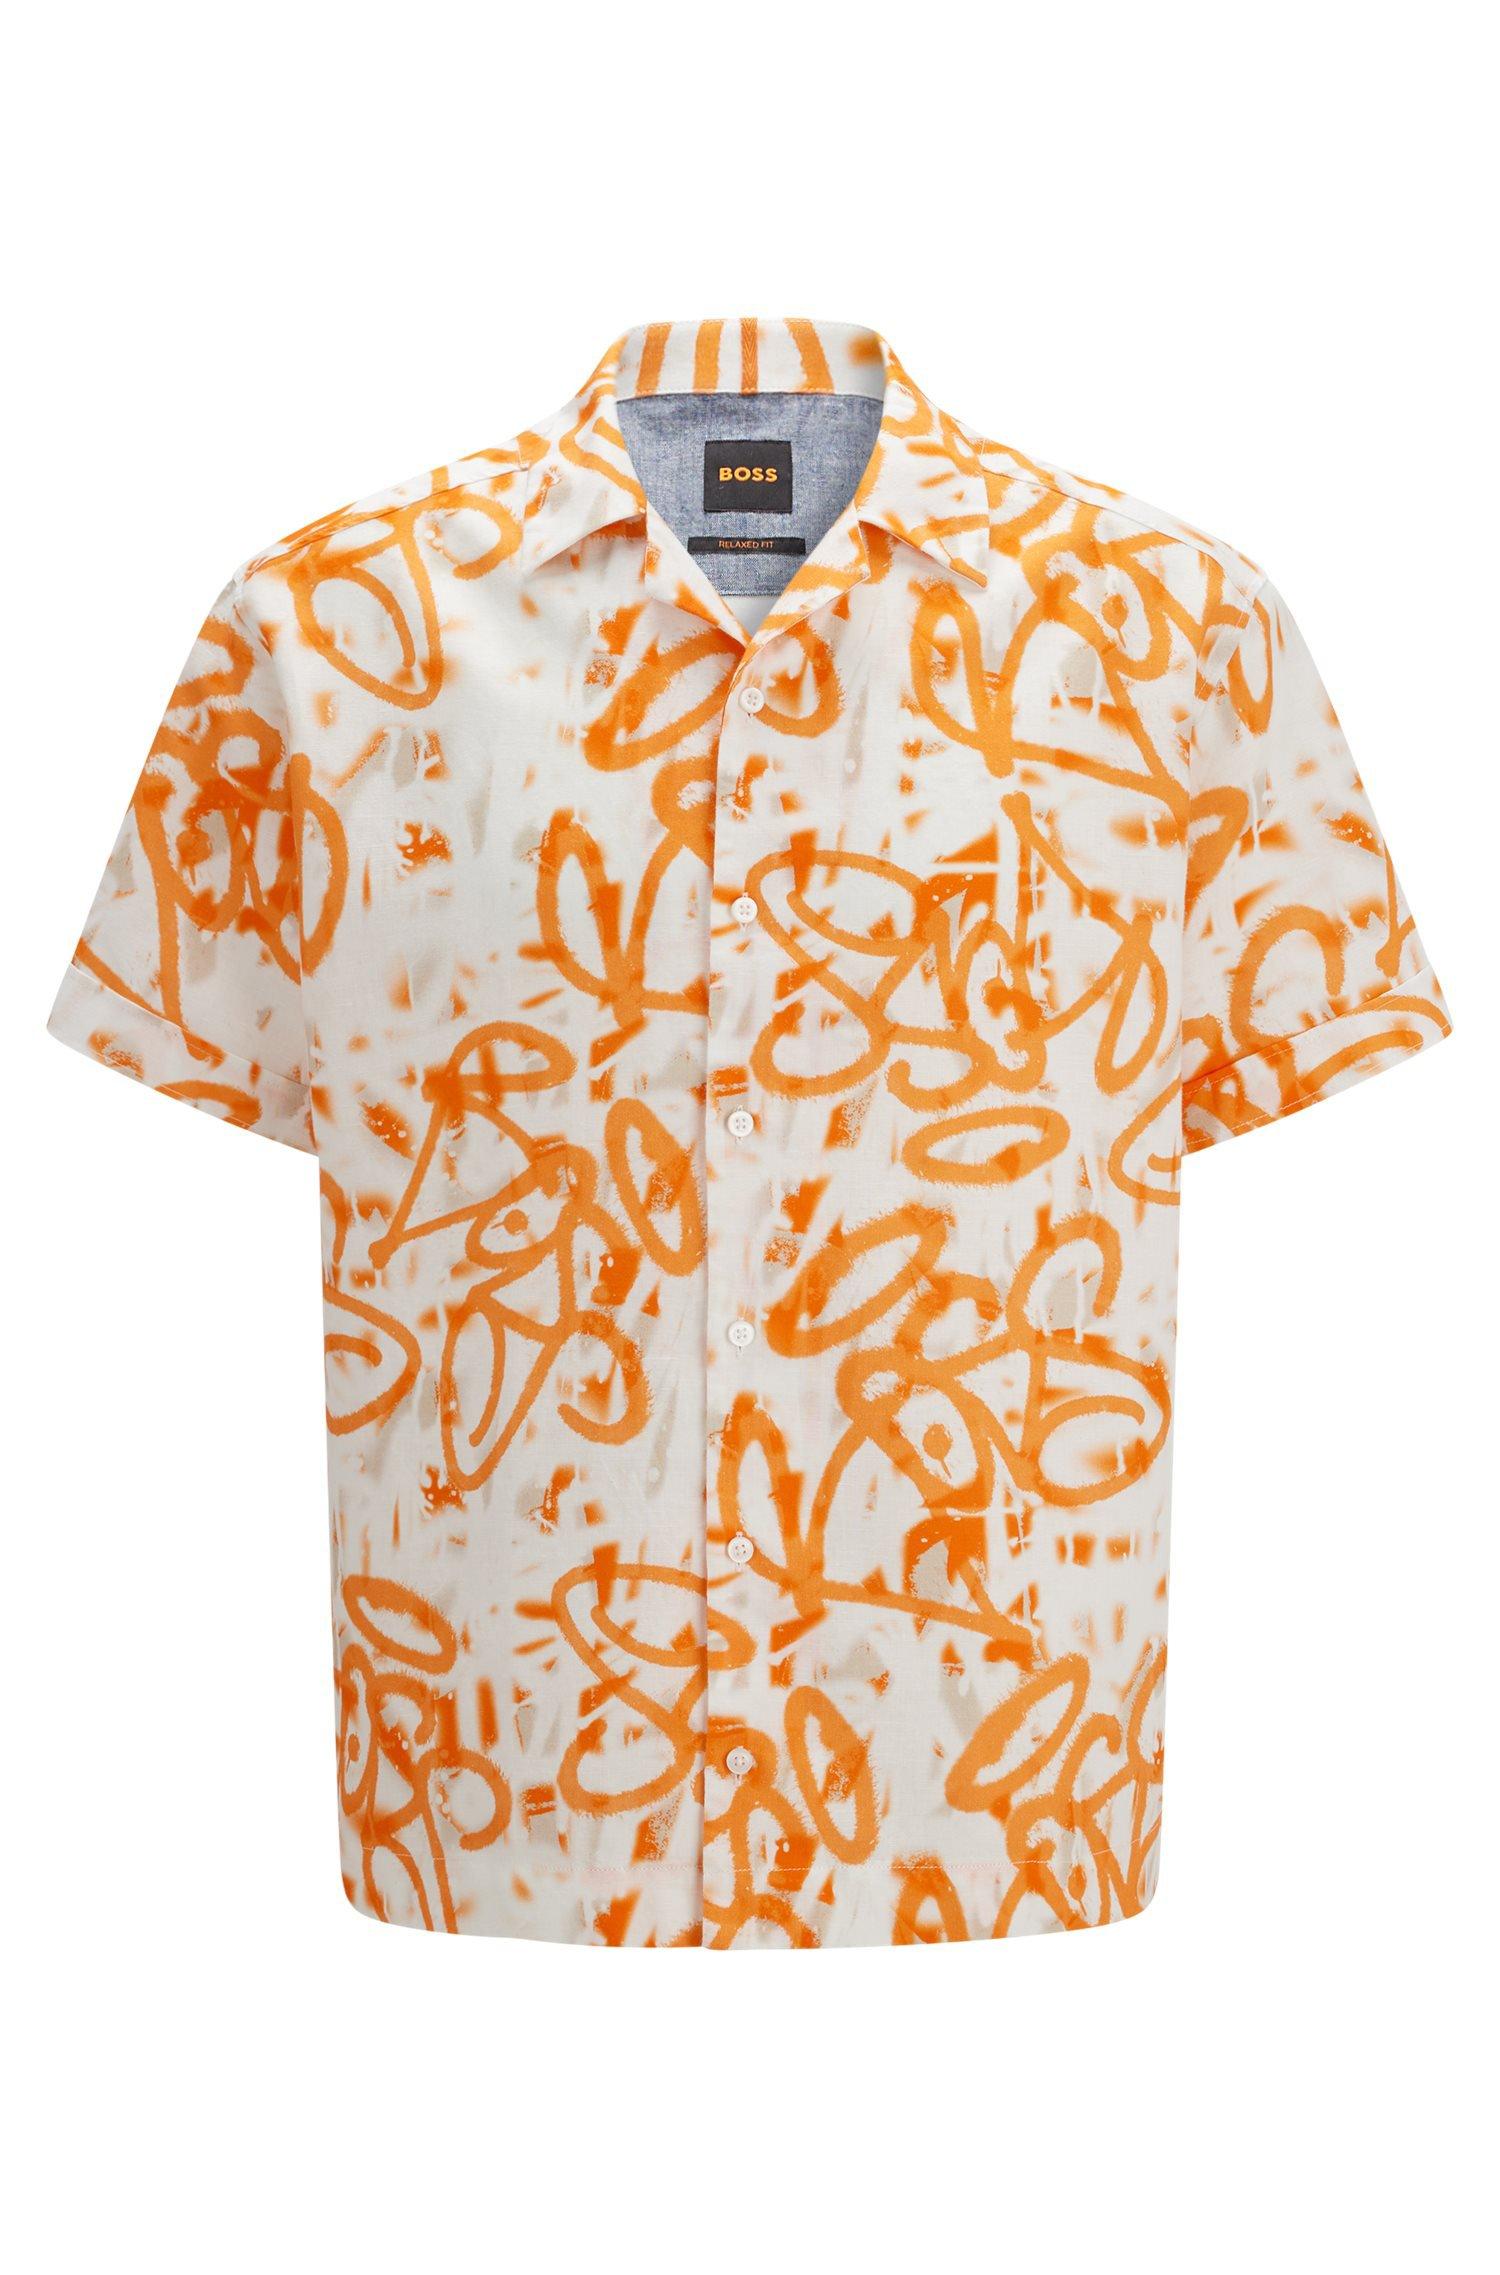 BOSS by HUGO BOSS Relaxed-fit Short-sleeved Shirt With Graffiti Artwork in  Orange for Men | Lyst UK